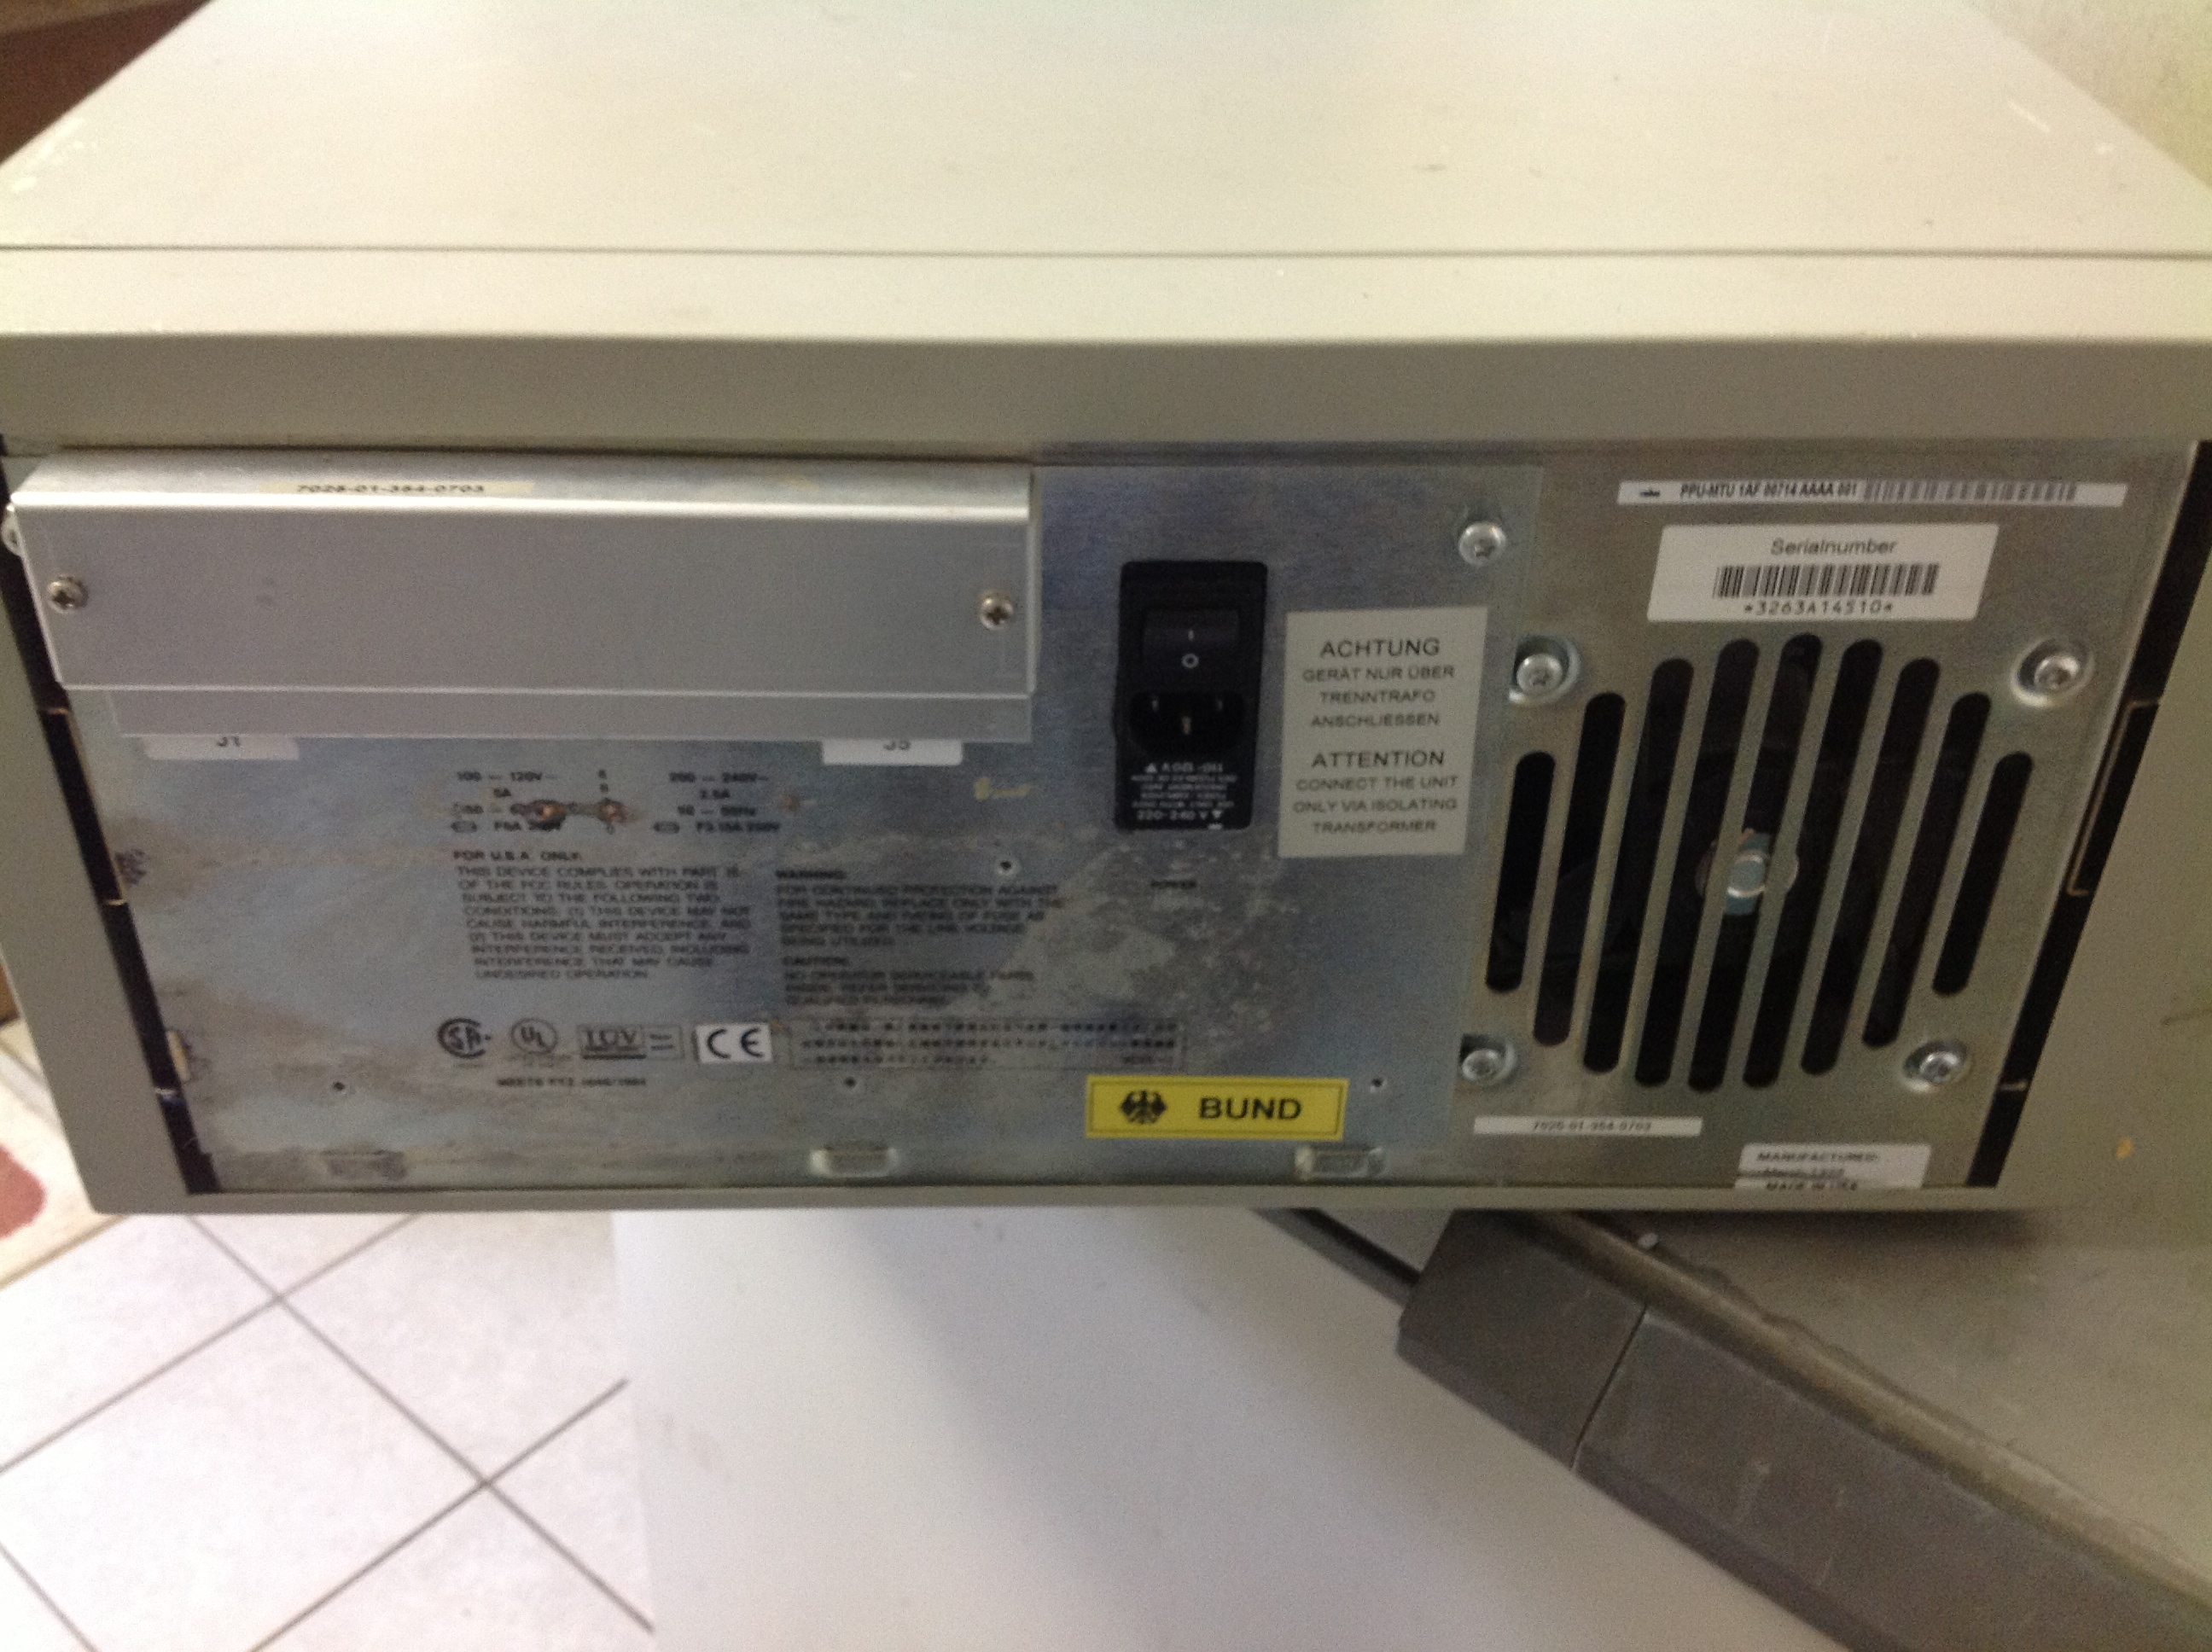 Hewlett Packard 88780 B Autoload-Datenrolle mit Bandlaufwerk Vintage-Einheit